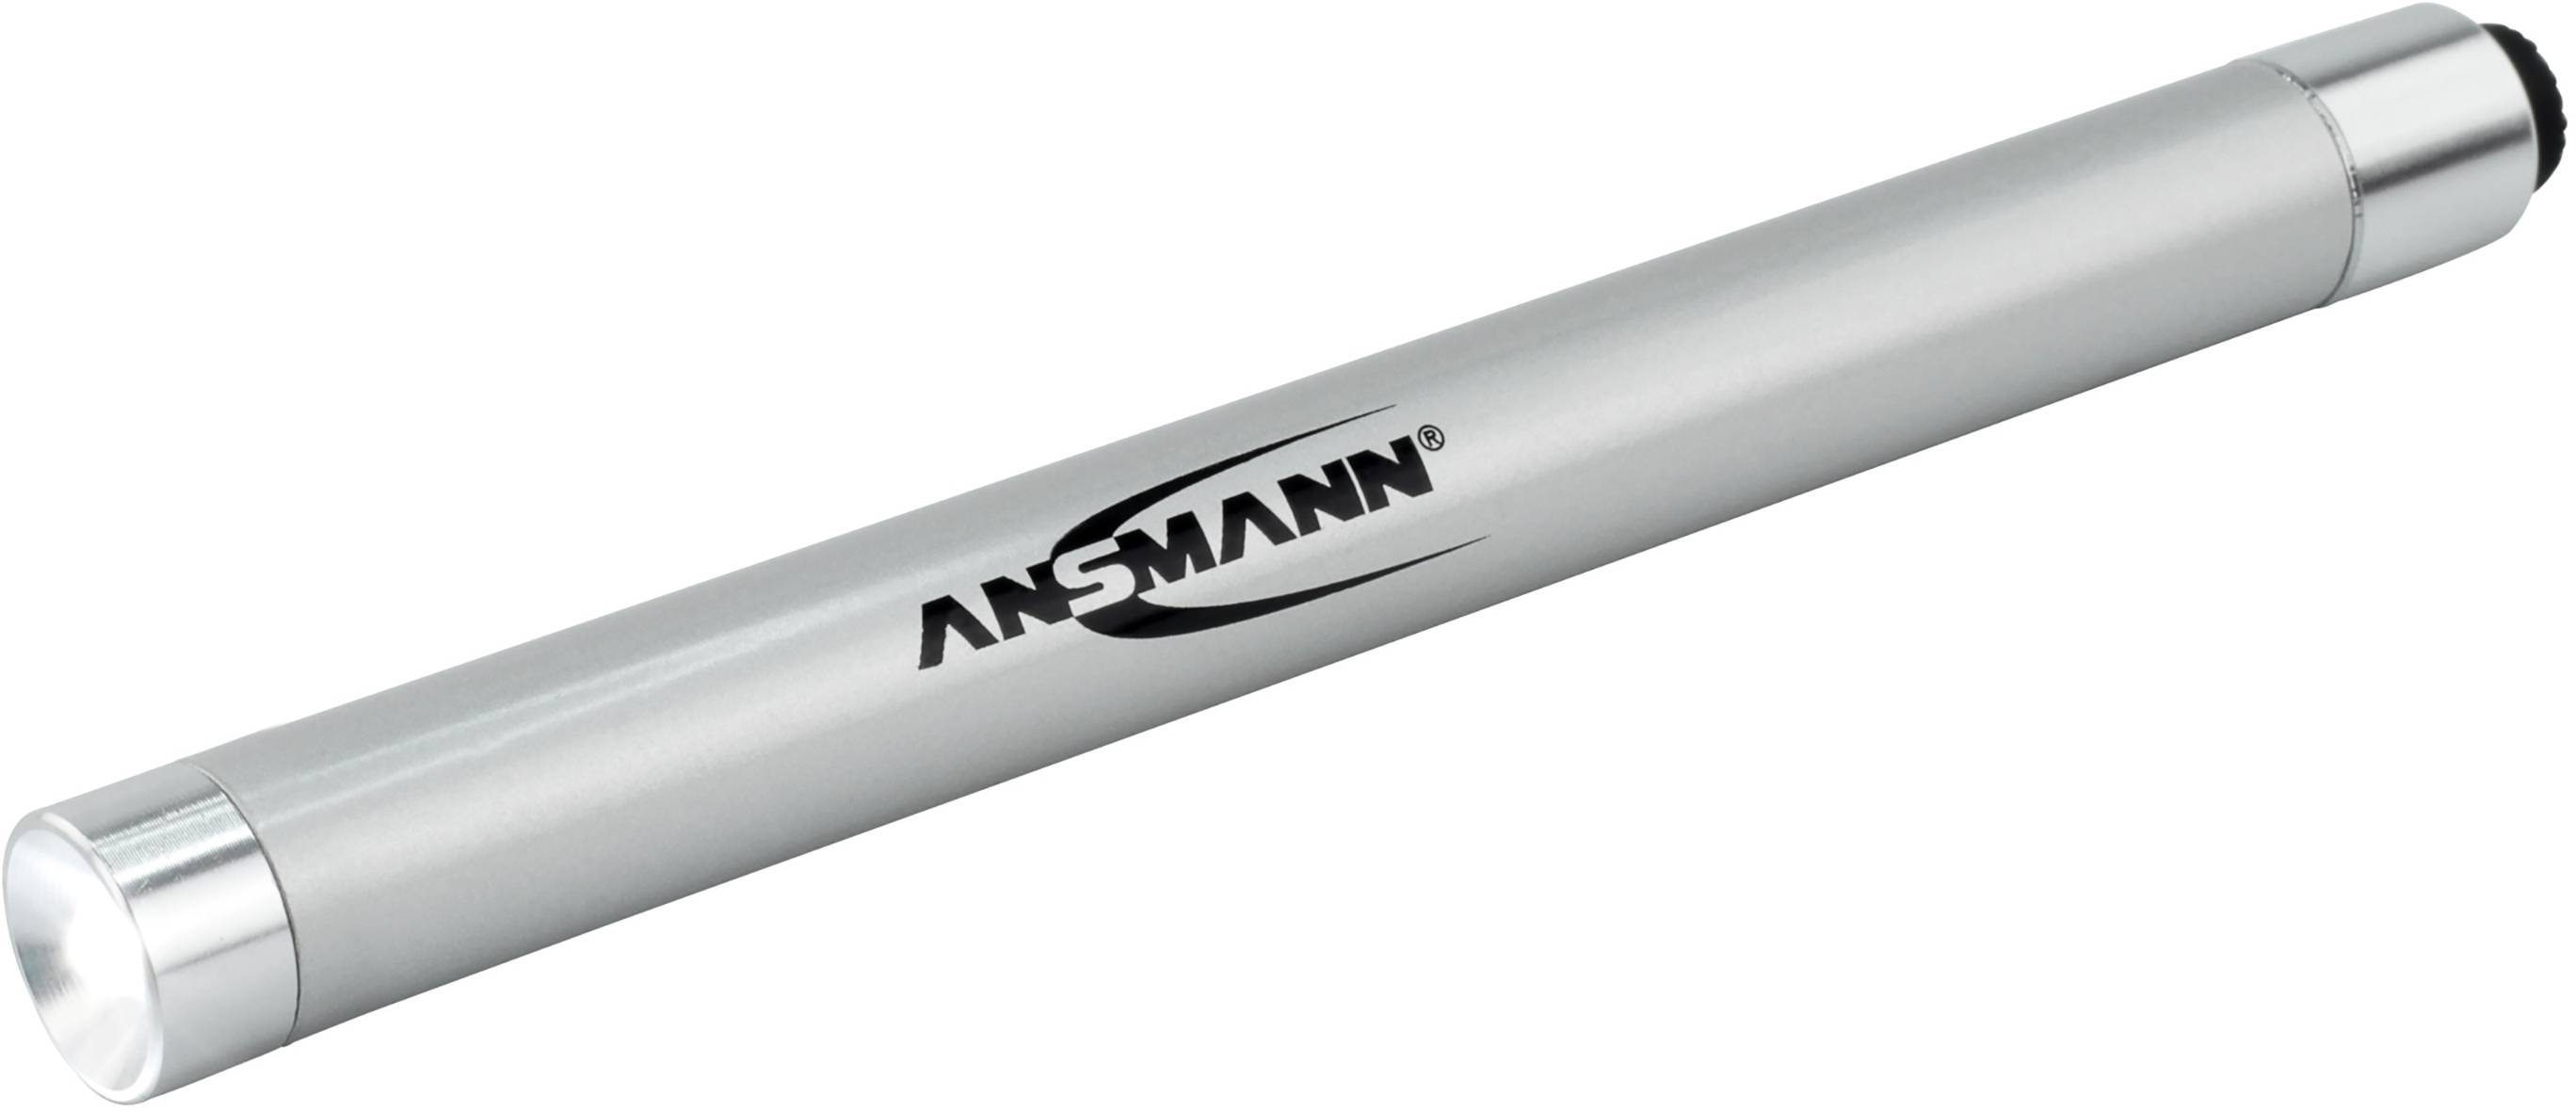 ANSMANN Penlight batteriebetrieben LED 133.8 mm 1600-0169 X15 Silber